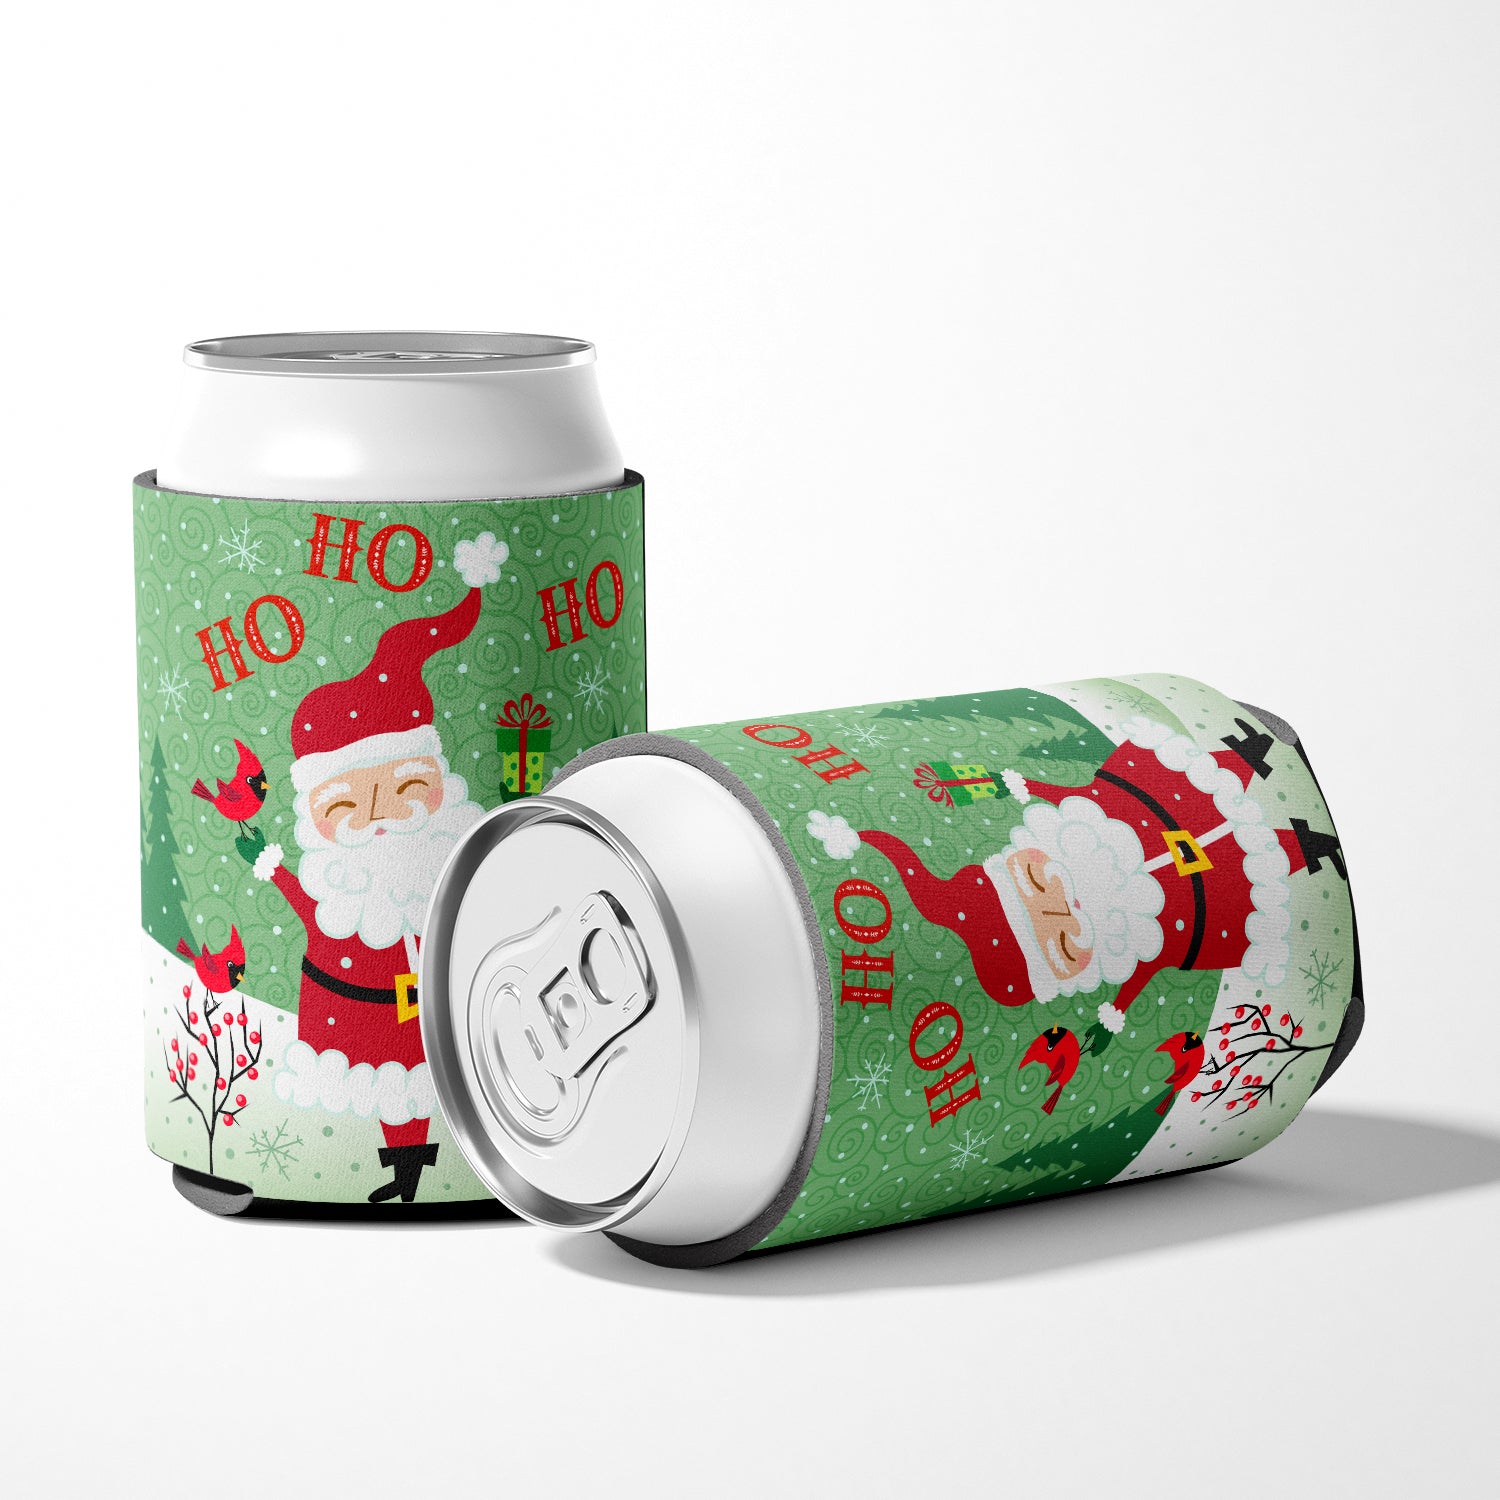 Merry Christmas Santa Claus Ho Ho Ho Can or Bottle Hugger VHA3016CC.